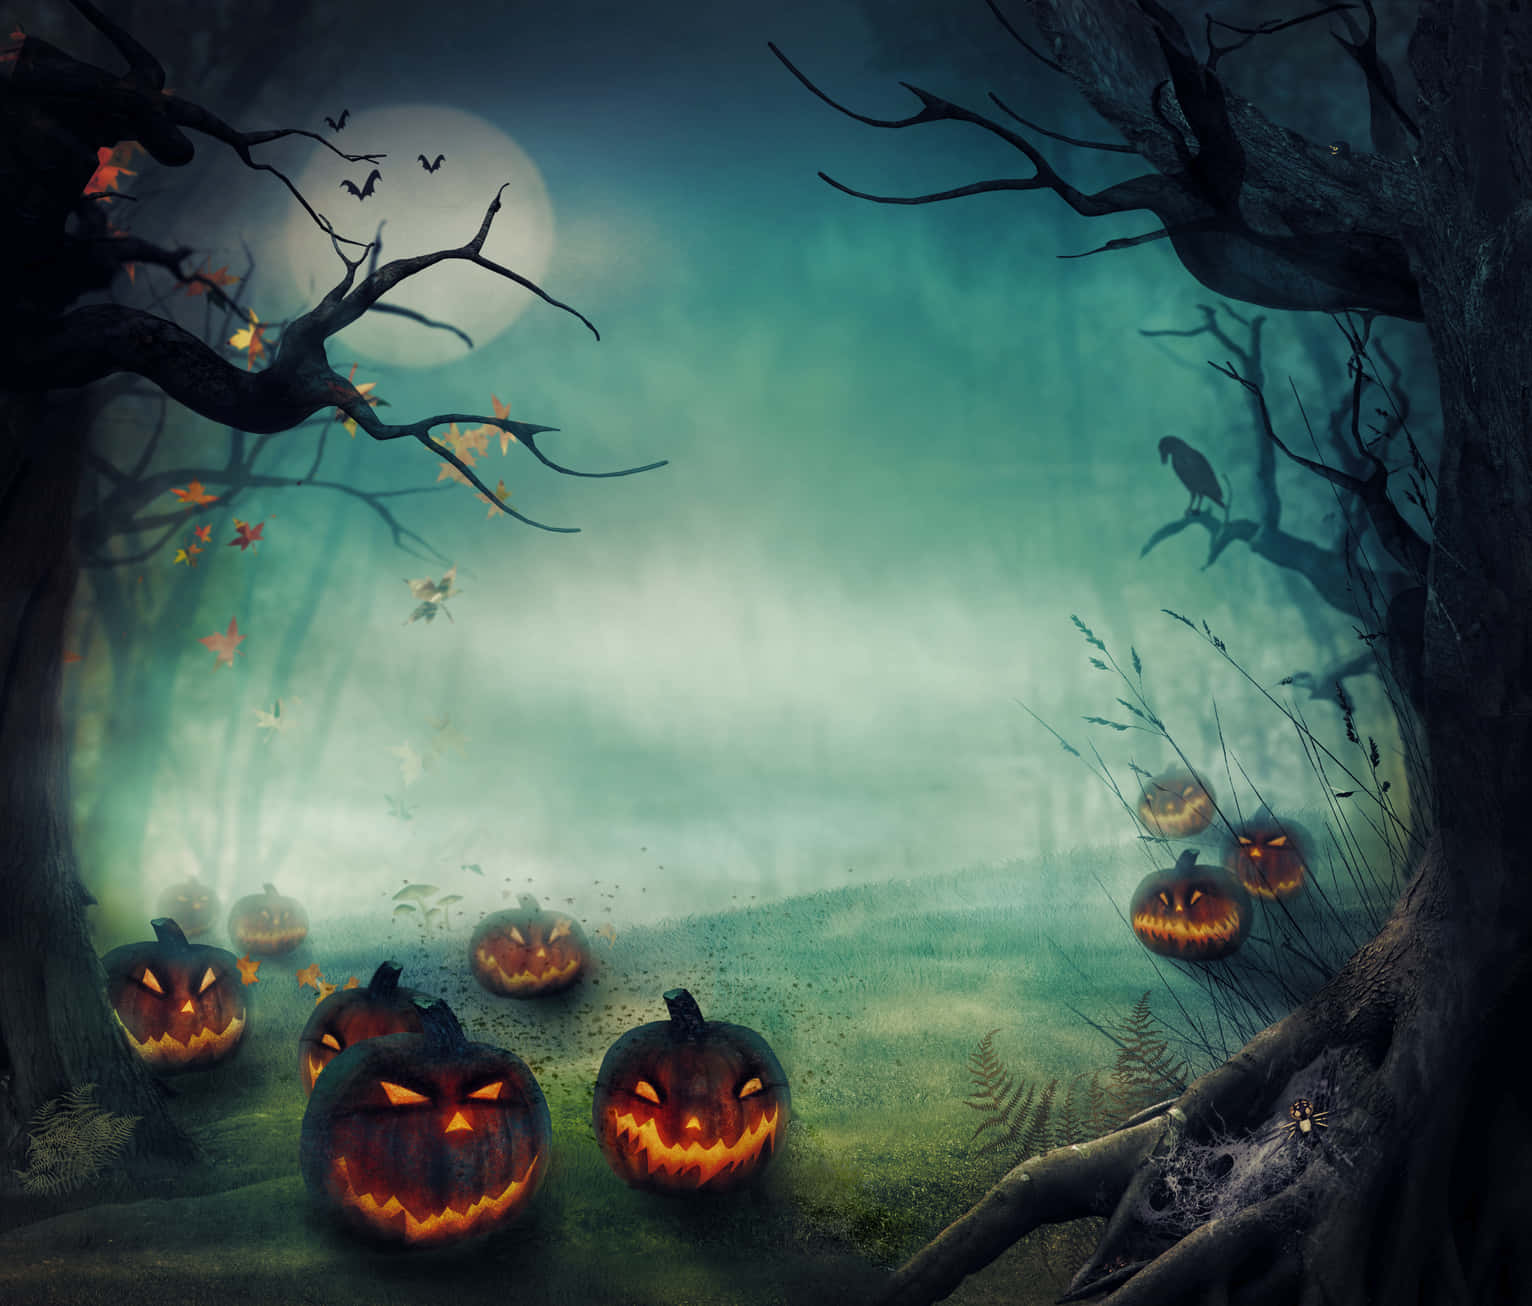 Gør dig klar til at blive skræmt denne halloween! Wallpaper